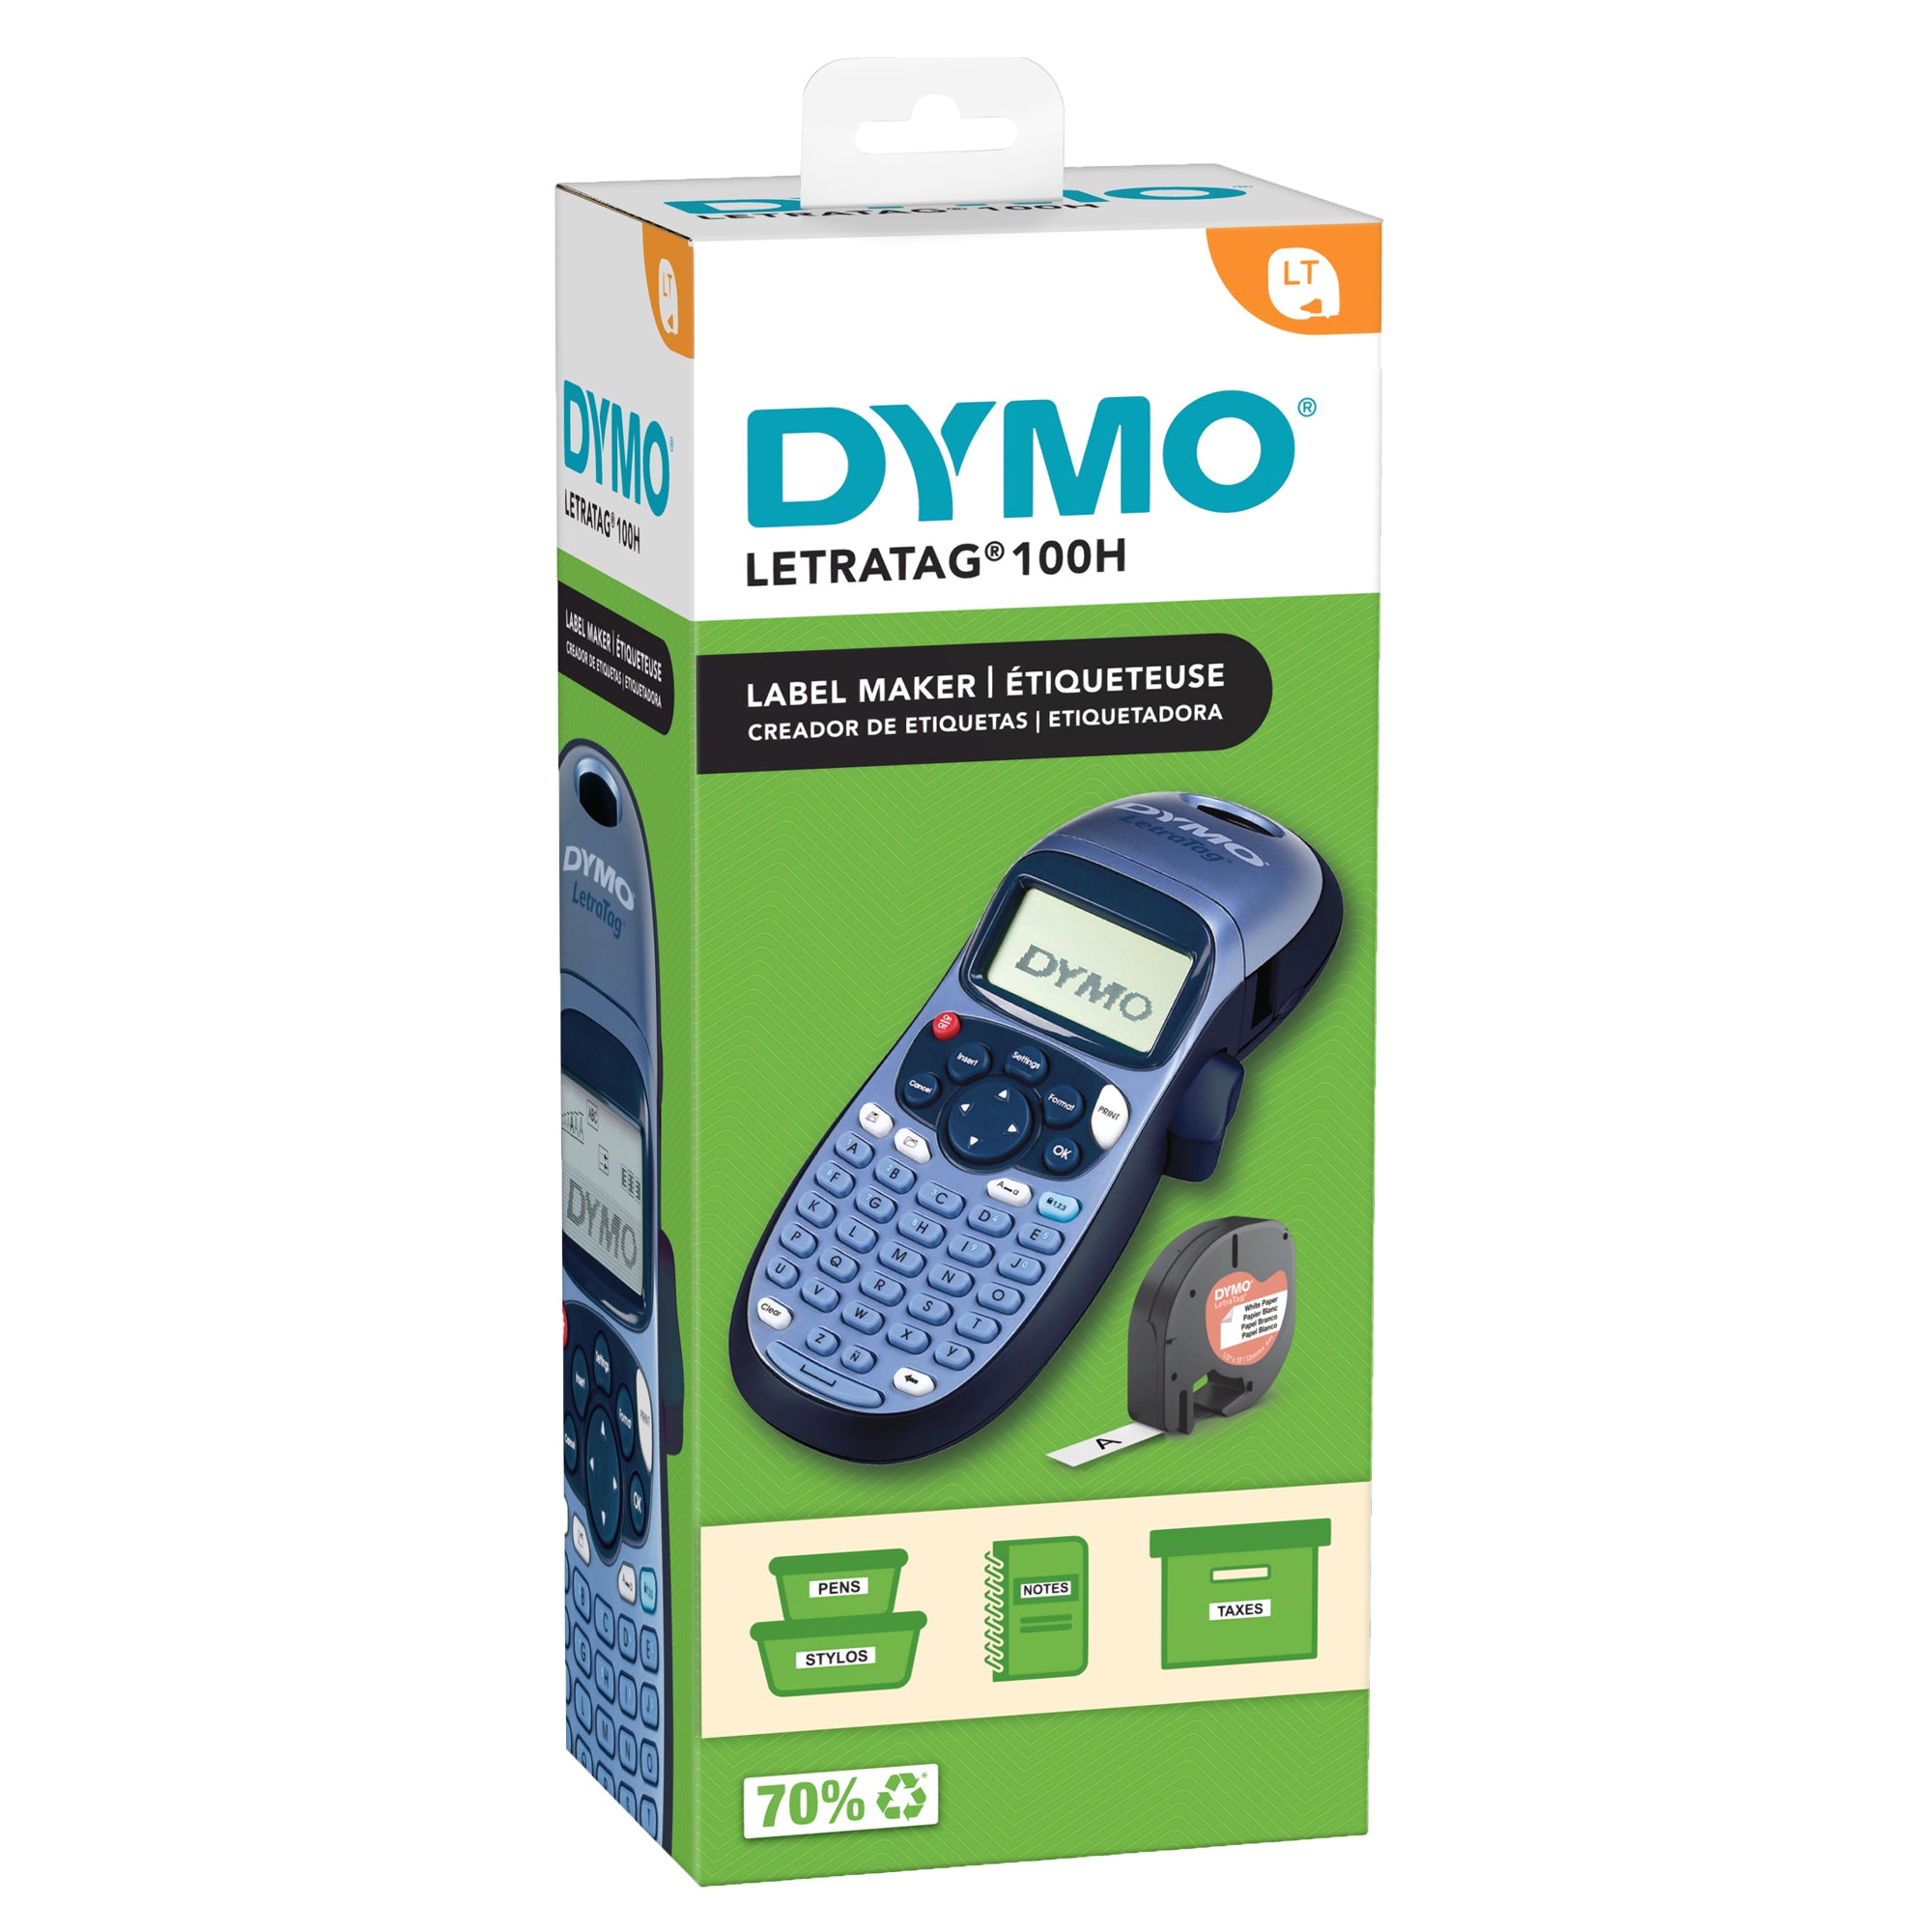 dymo-etichettatrice-elettronica-letratag-lt-100h